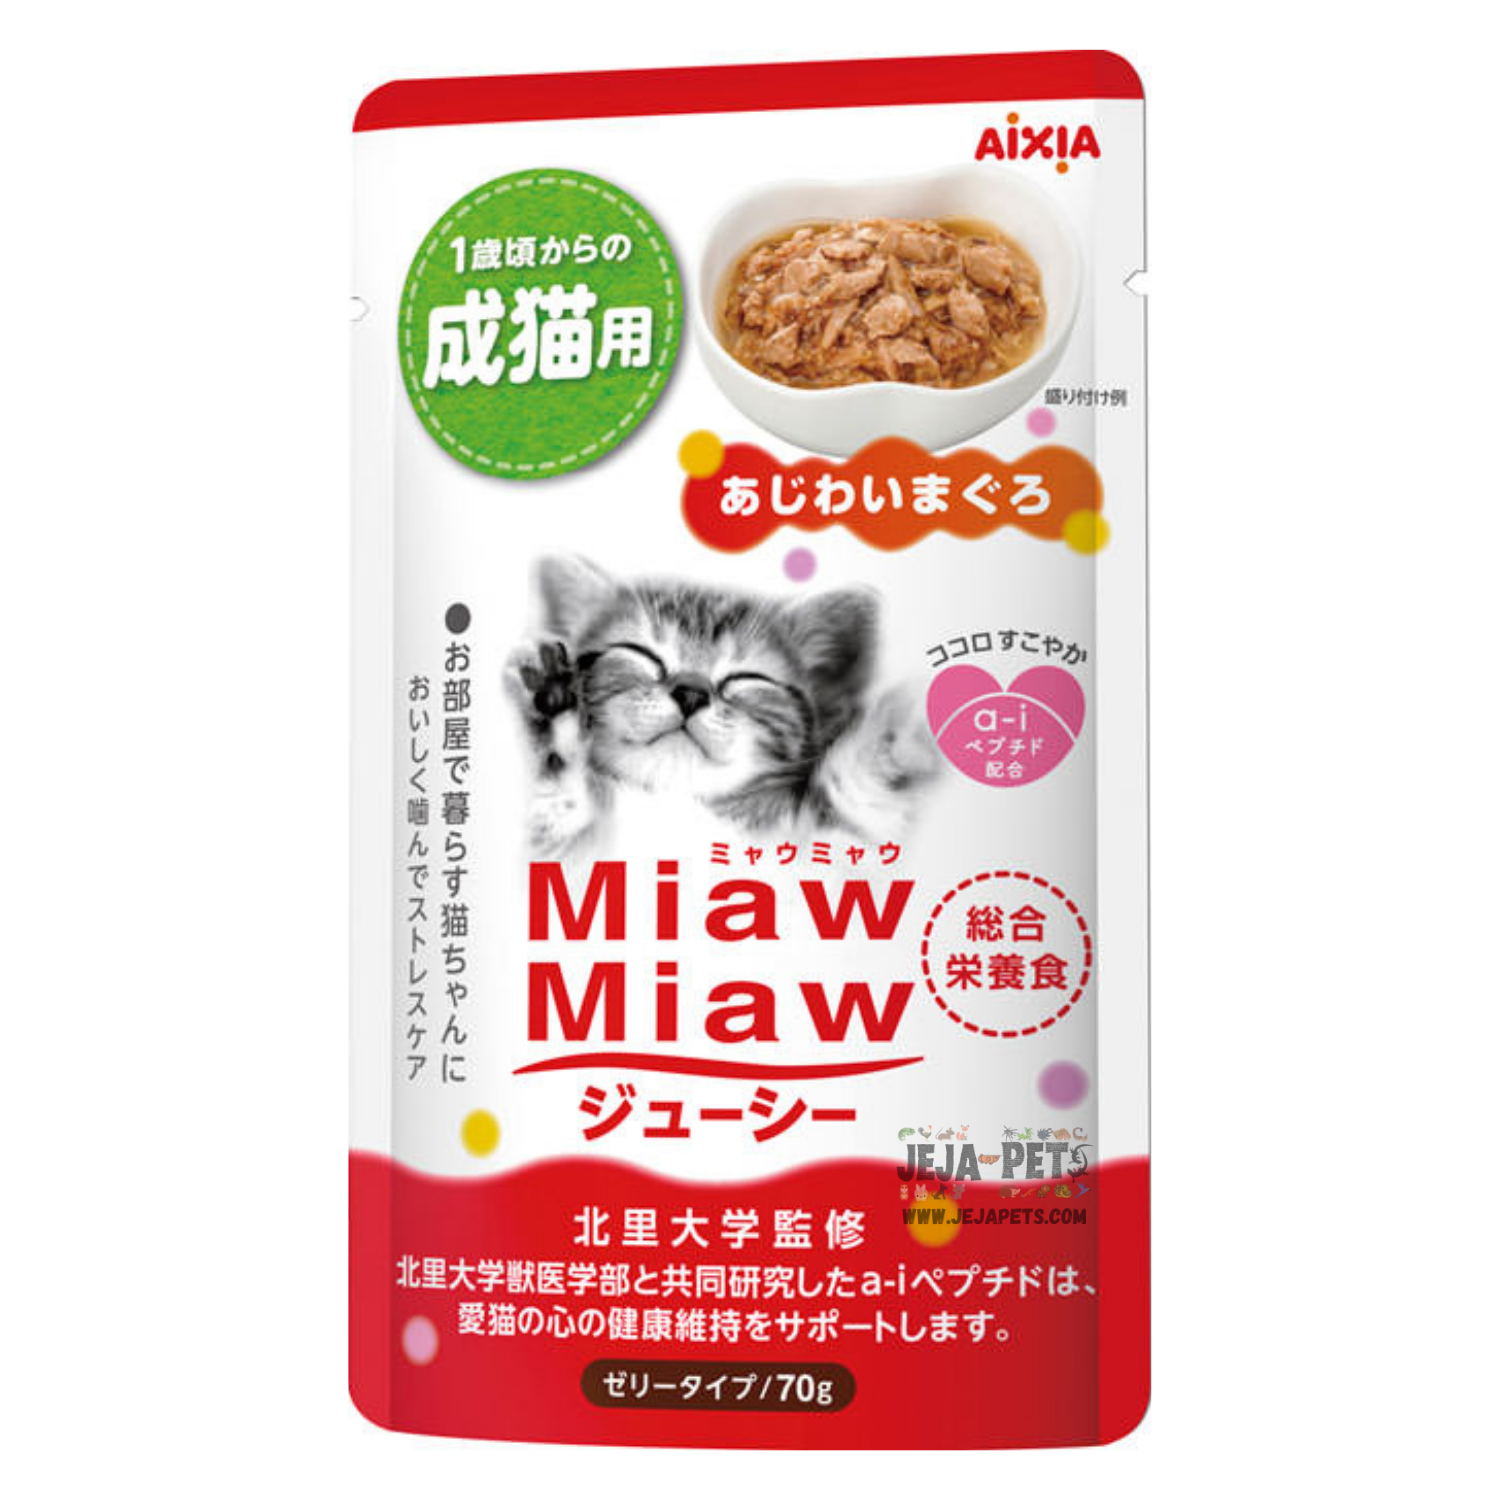 Aixia Miaw Miaw Juicy Pouch Tuna for Cats - 70g